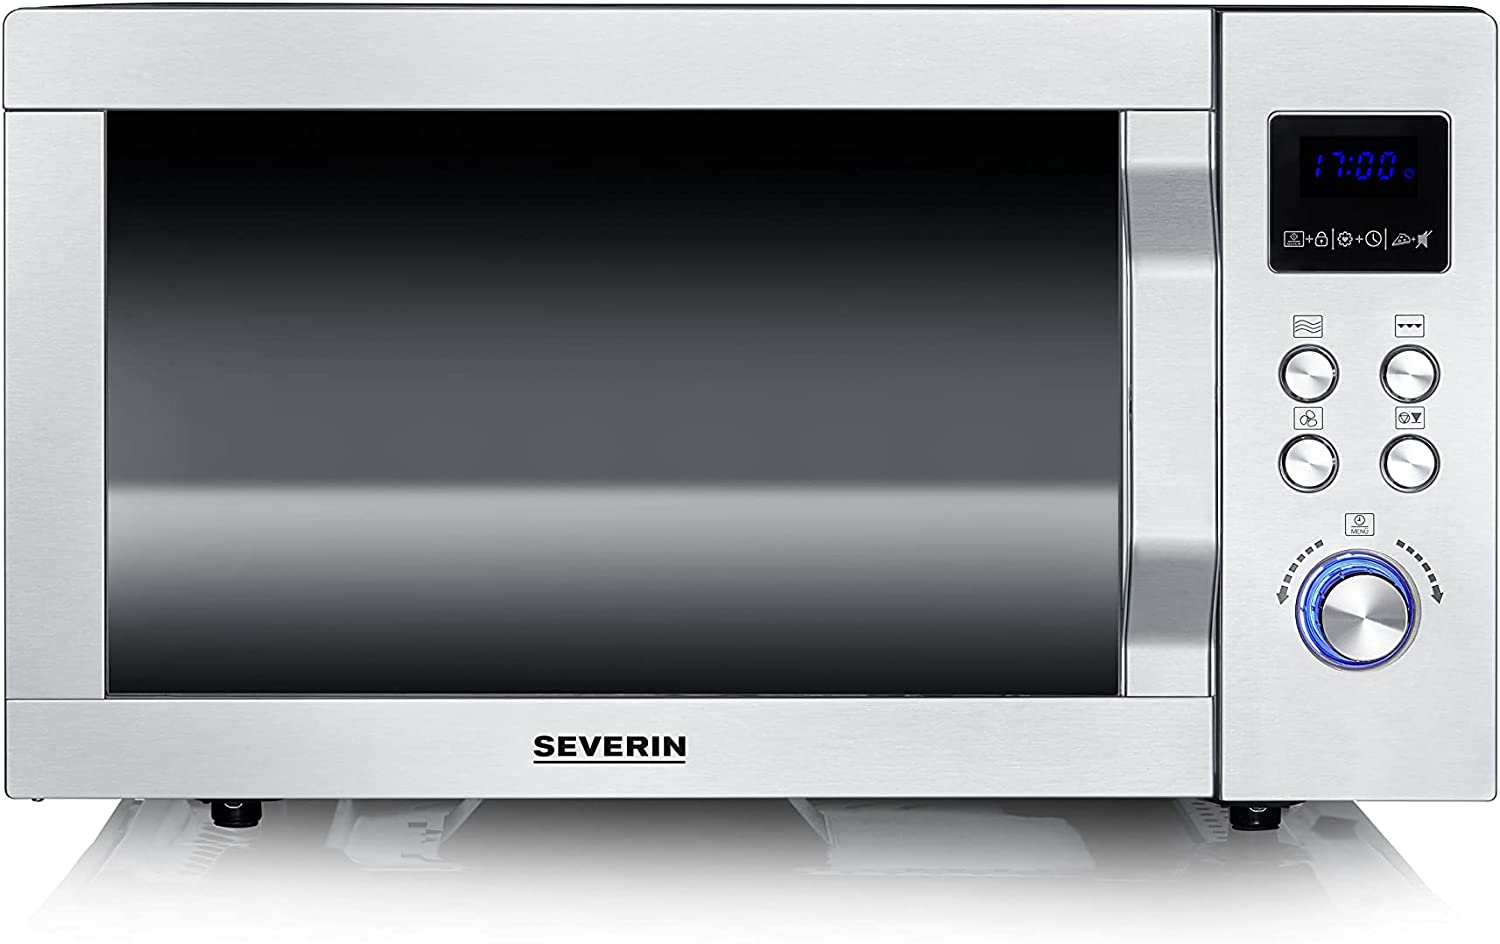 SEVERIN 4-in-1 Mikrowelle mit Doppelgrill, Minibackofen mit Pizza-Express Funktion, Mikrowelle mit Grill und Heißluftfunktion bis zu 230 °C, Edelstahl/schwarz-matt, MW 7778